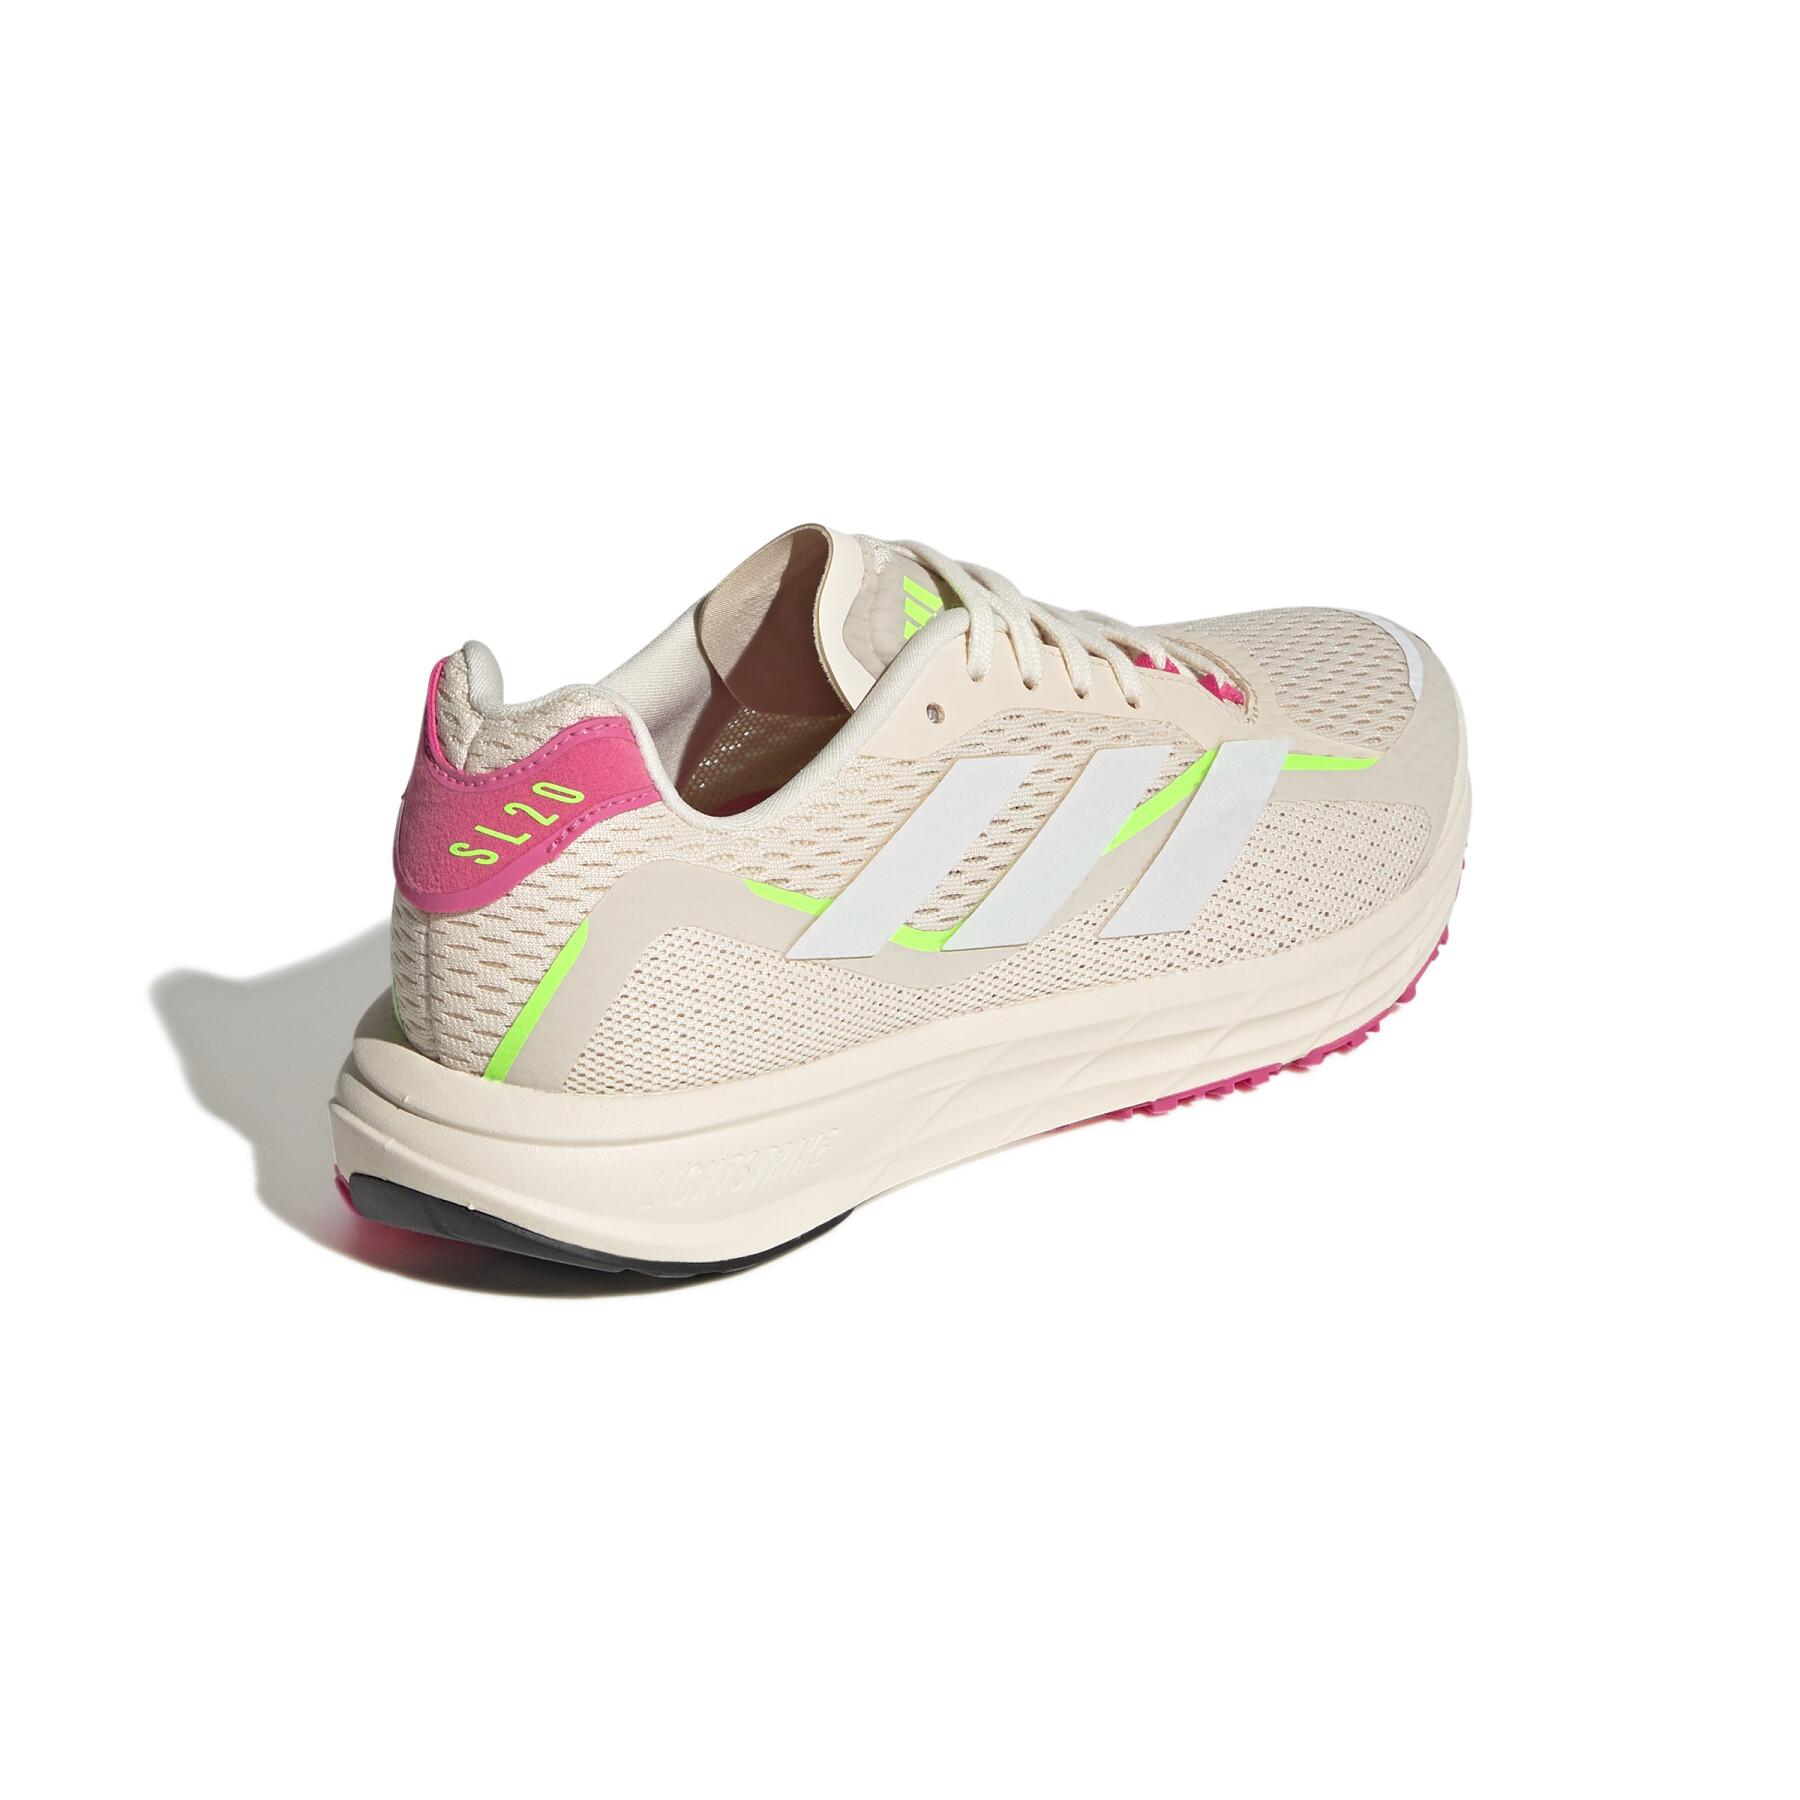 Chaussures de running femme adidas SL2.3